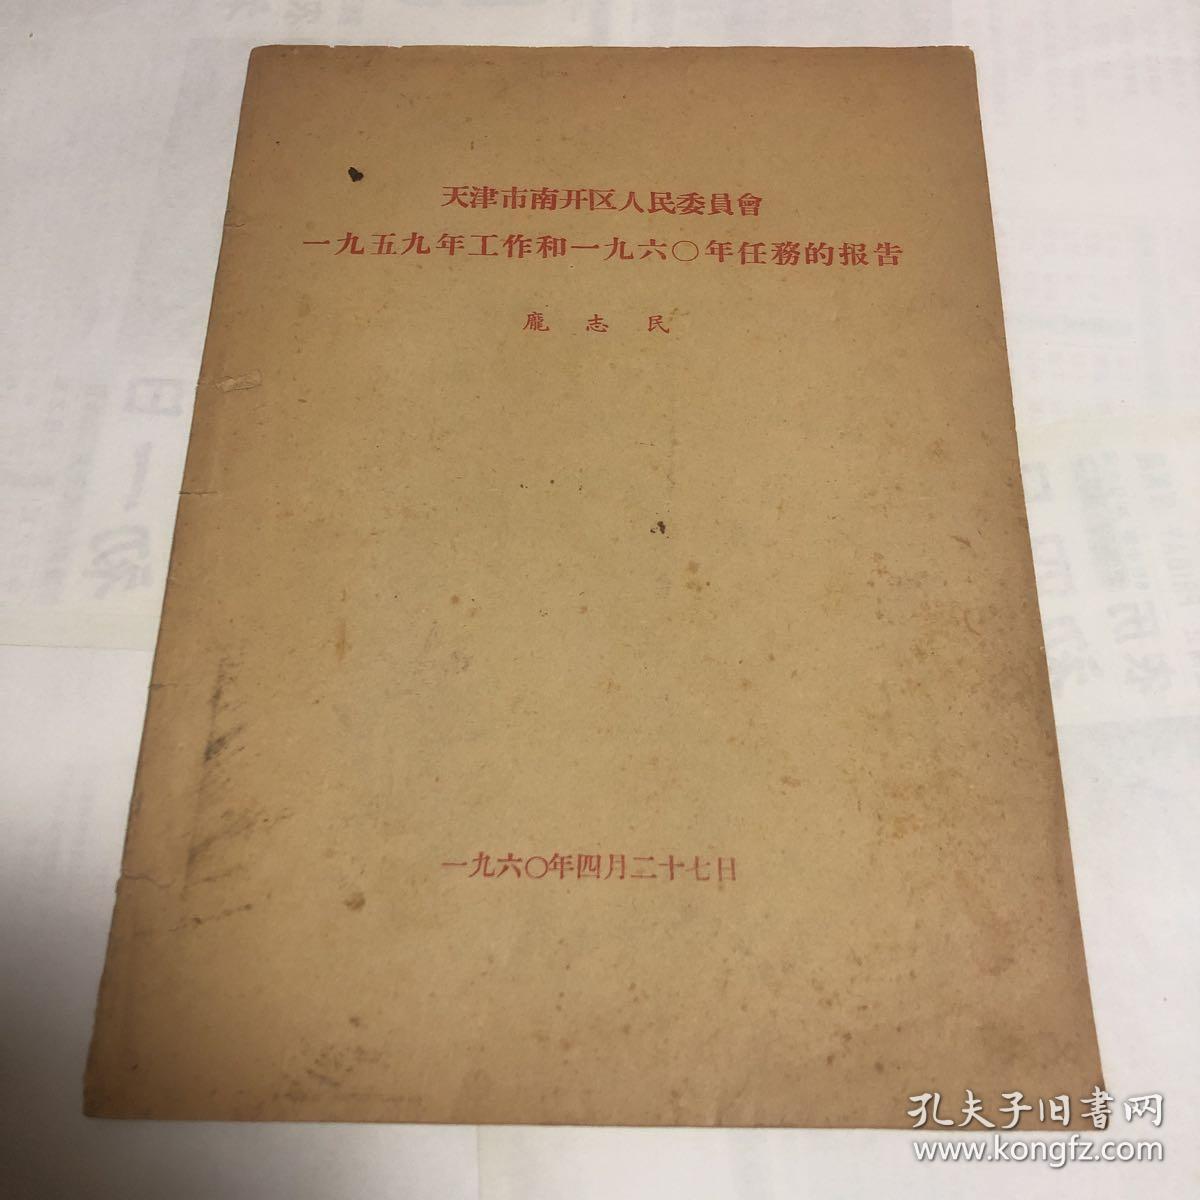 【大跃进文献】天津市南开区人民委员会一九五九年工作和一九六〇年任务的报告